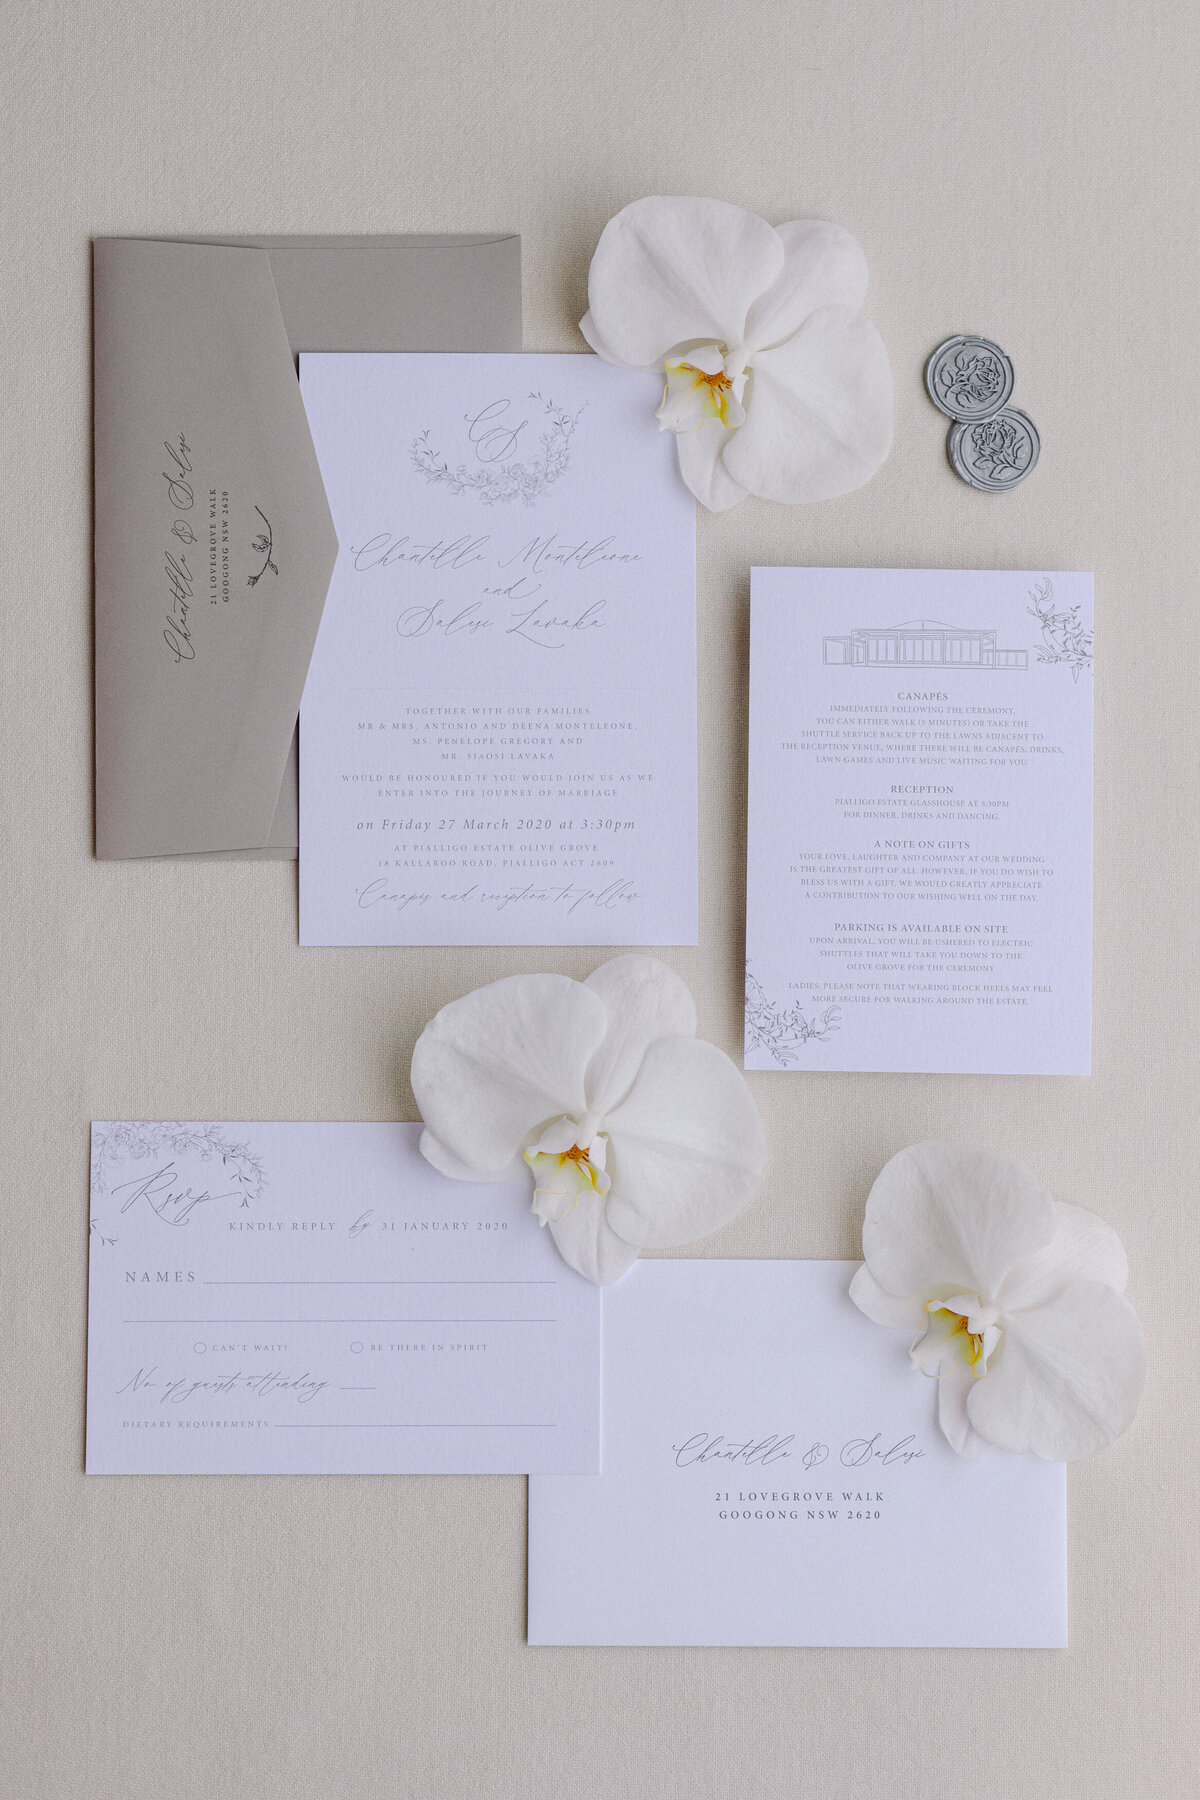 Minimalist Wedding invitations